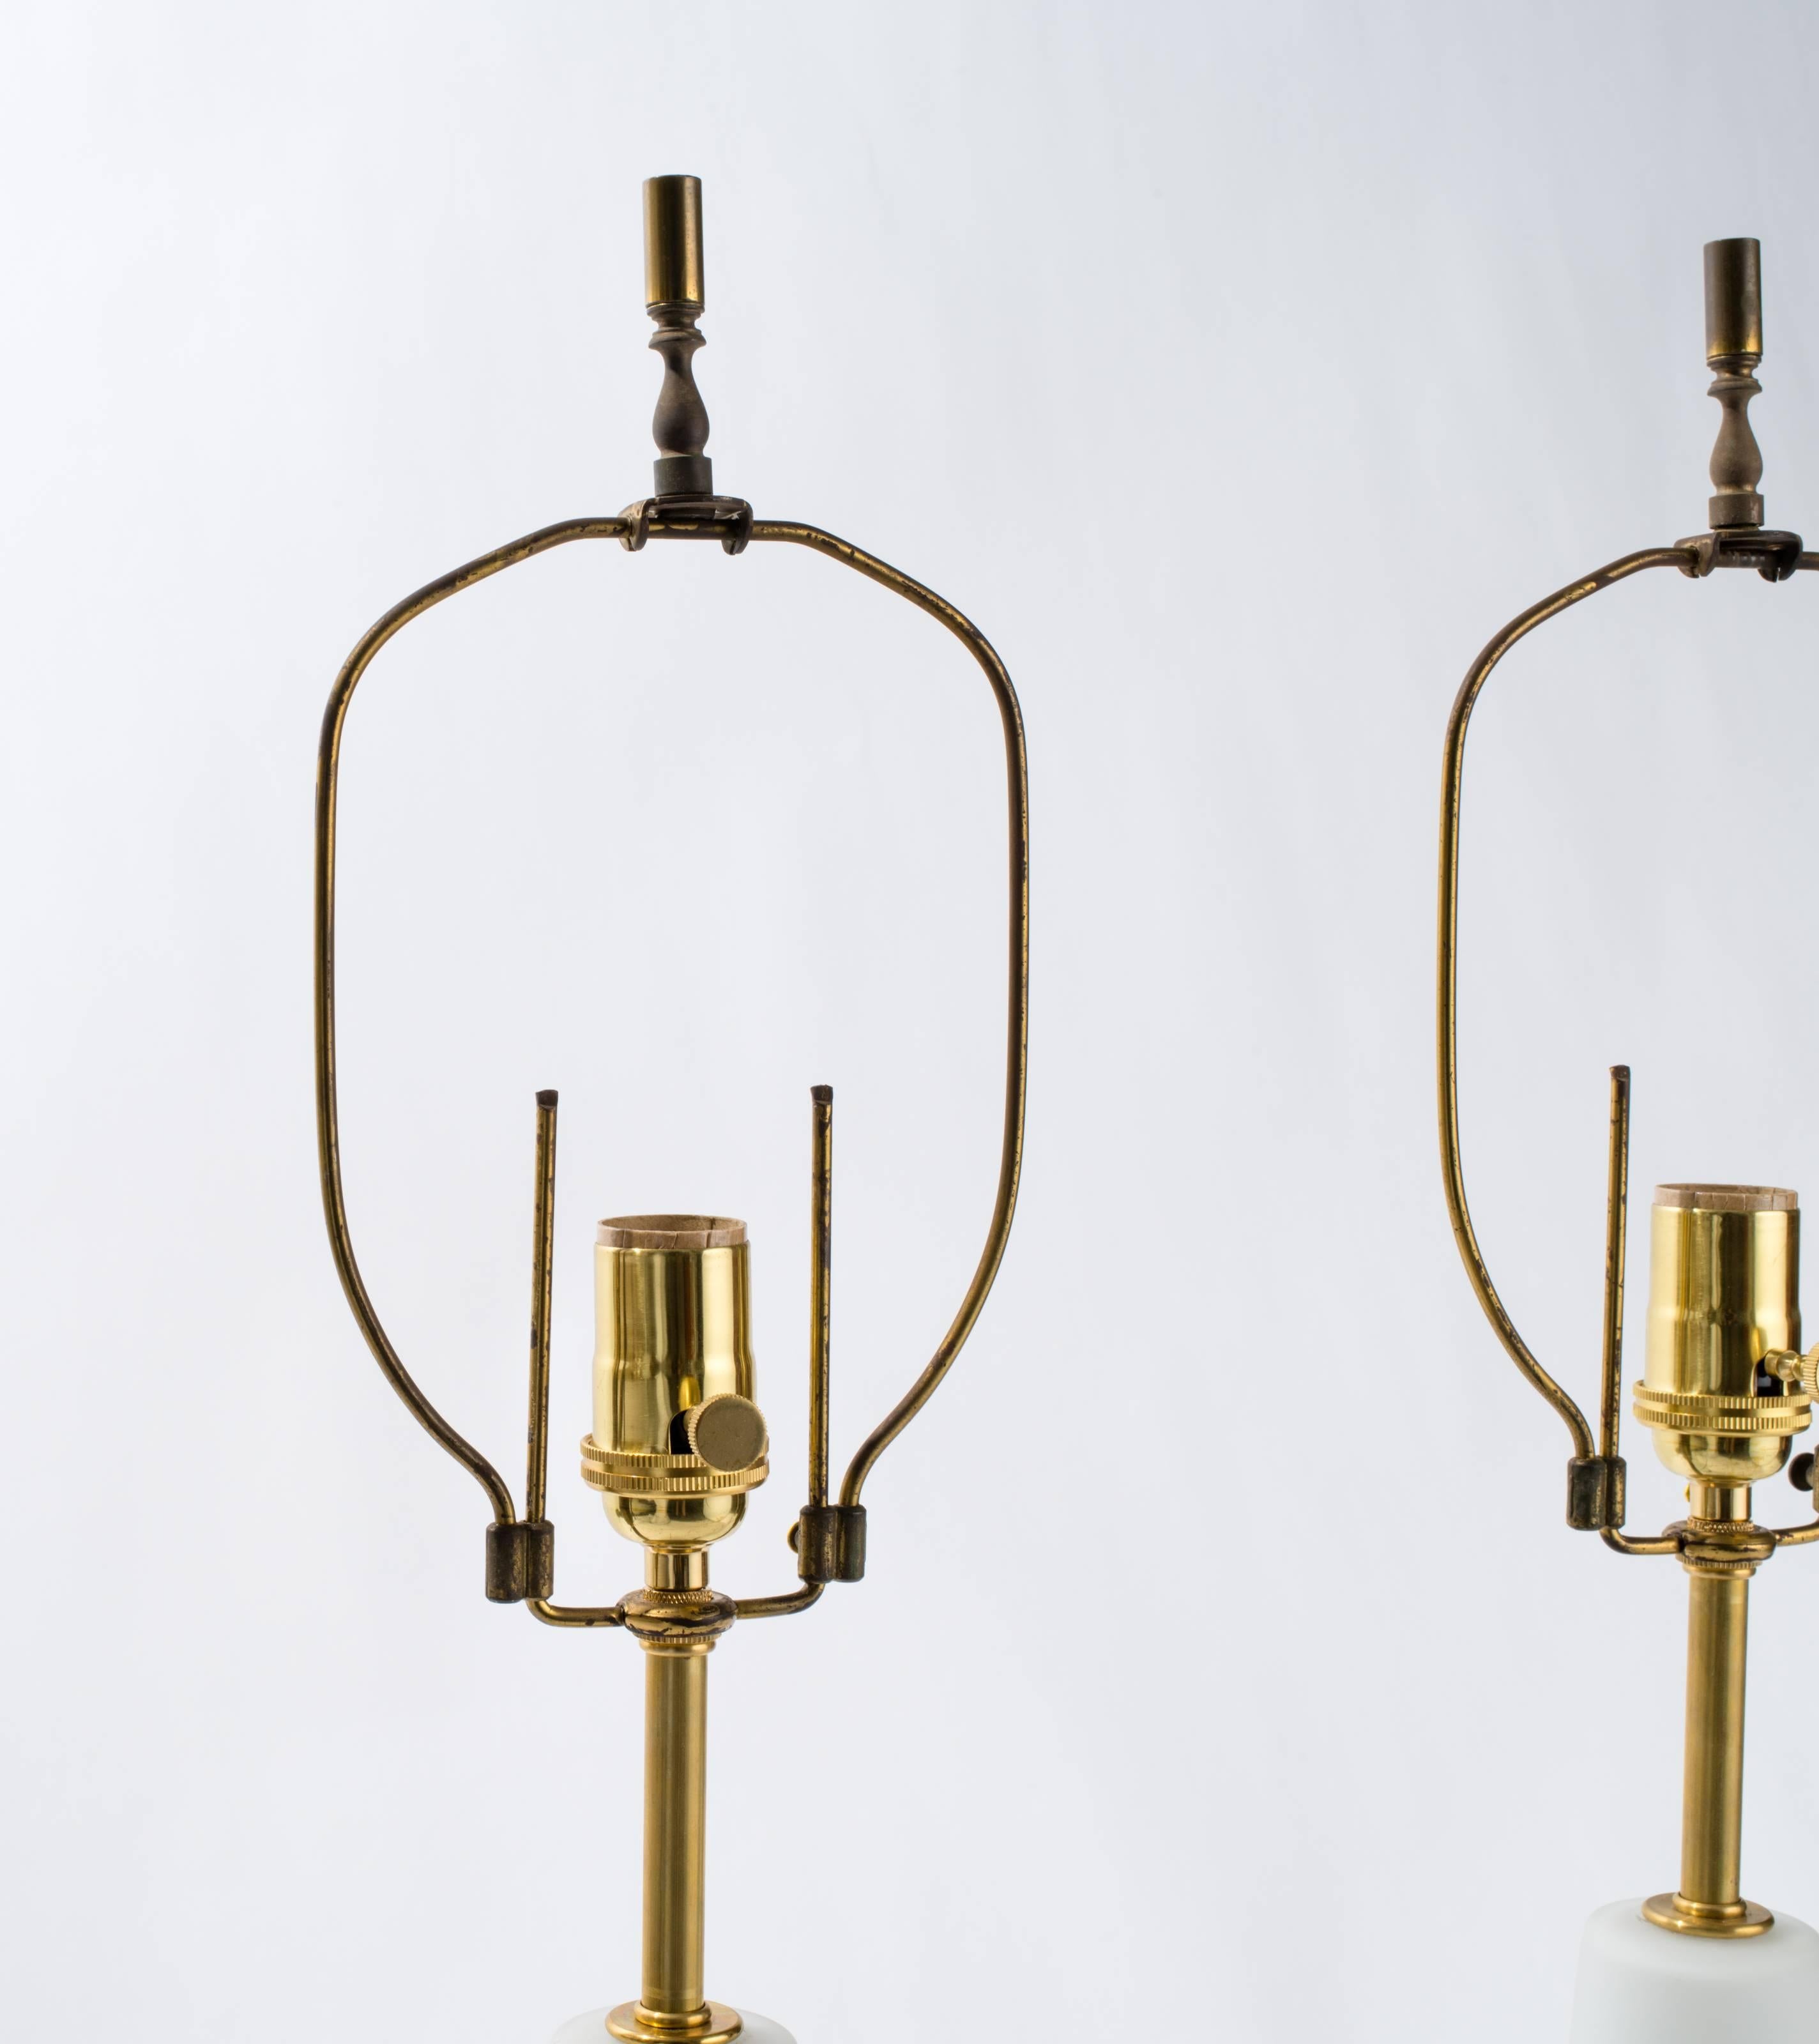 tischlampen aus geblasenem Glas und Holzsockel aus den 1950er Jahren.
Neu verkabelt mit Messingsteckdosen. Original verstellbare Harfe.